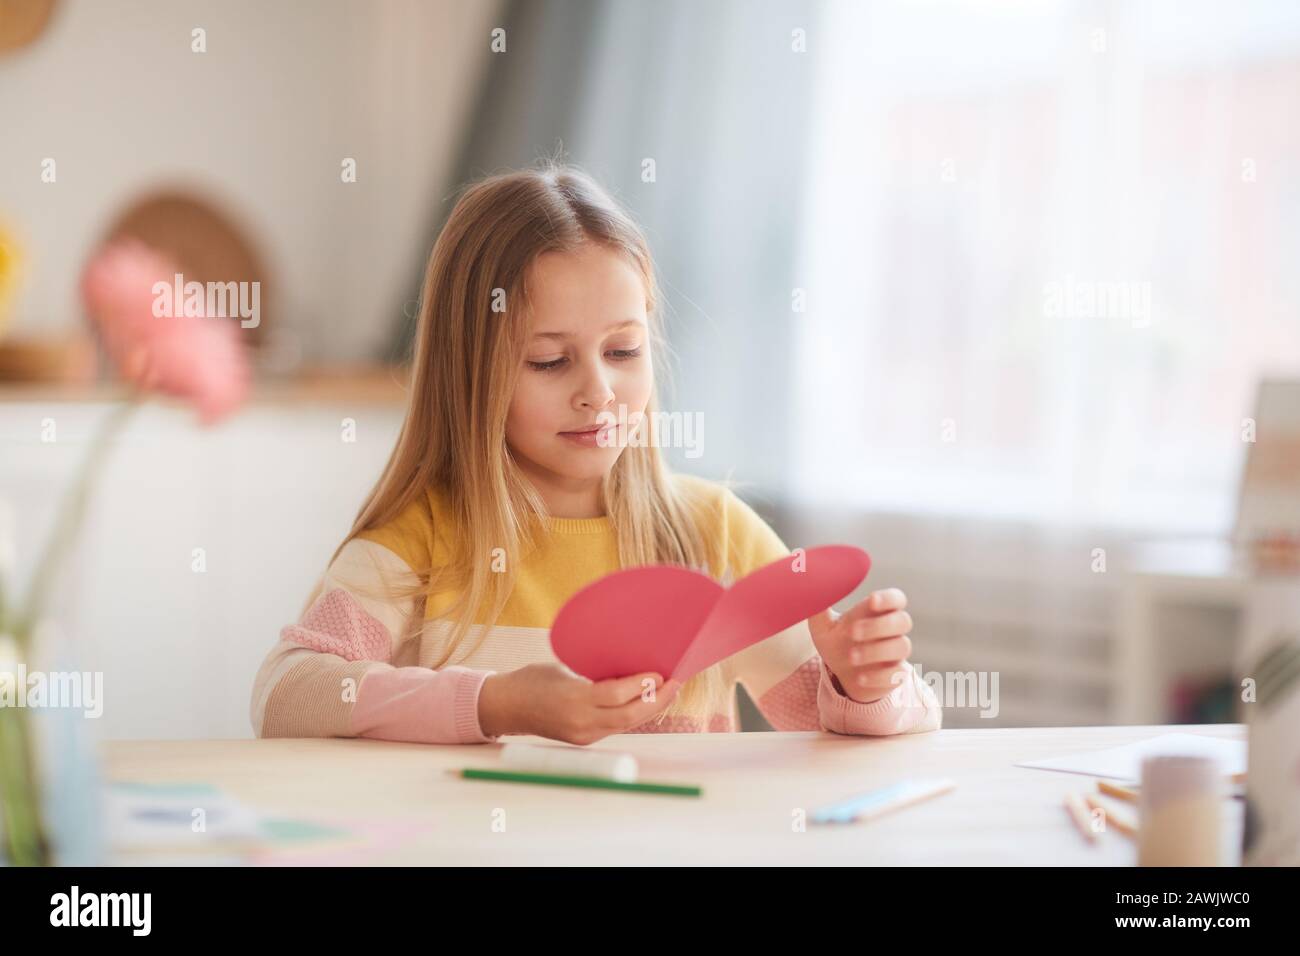 Portrait des niedlichen kleinen Mädchens, das herzförmige Karte hält und lächelt, während es am Tisch im gemütlichen Innenbereich sitzt, Platz für Kopien Stockfoto